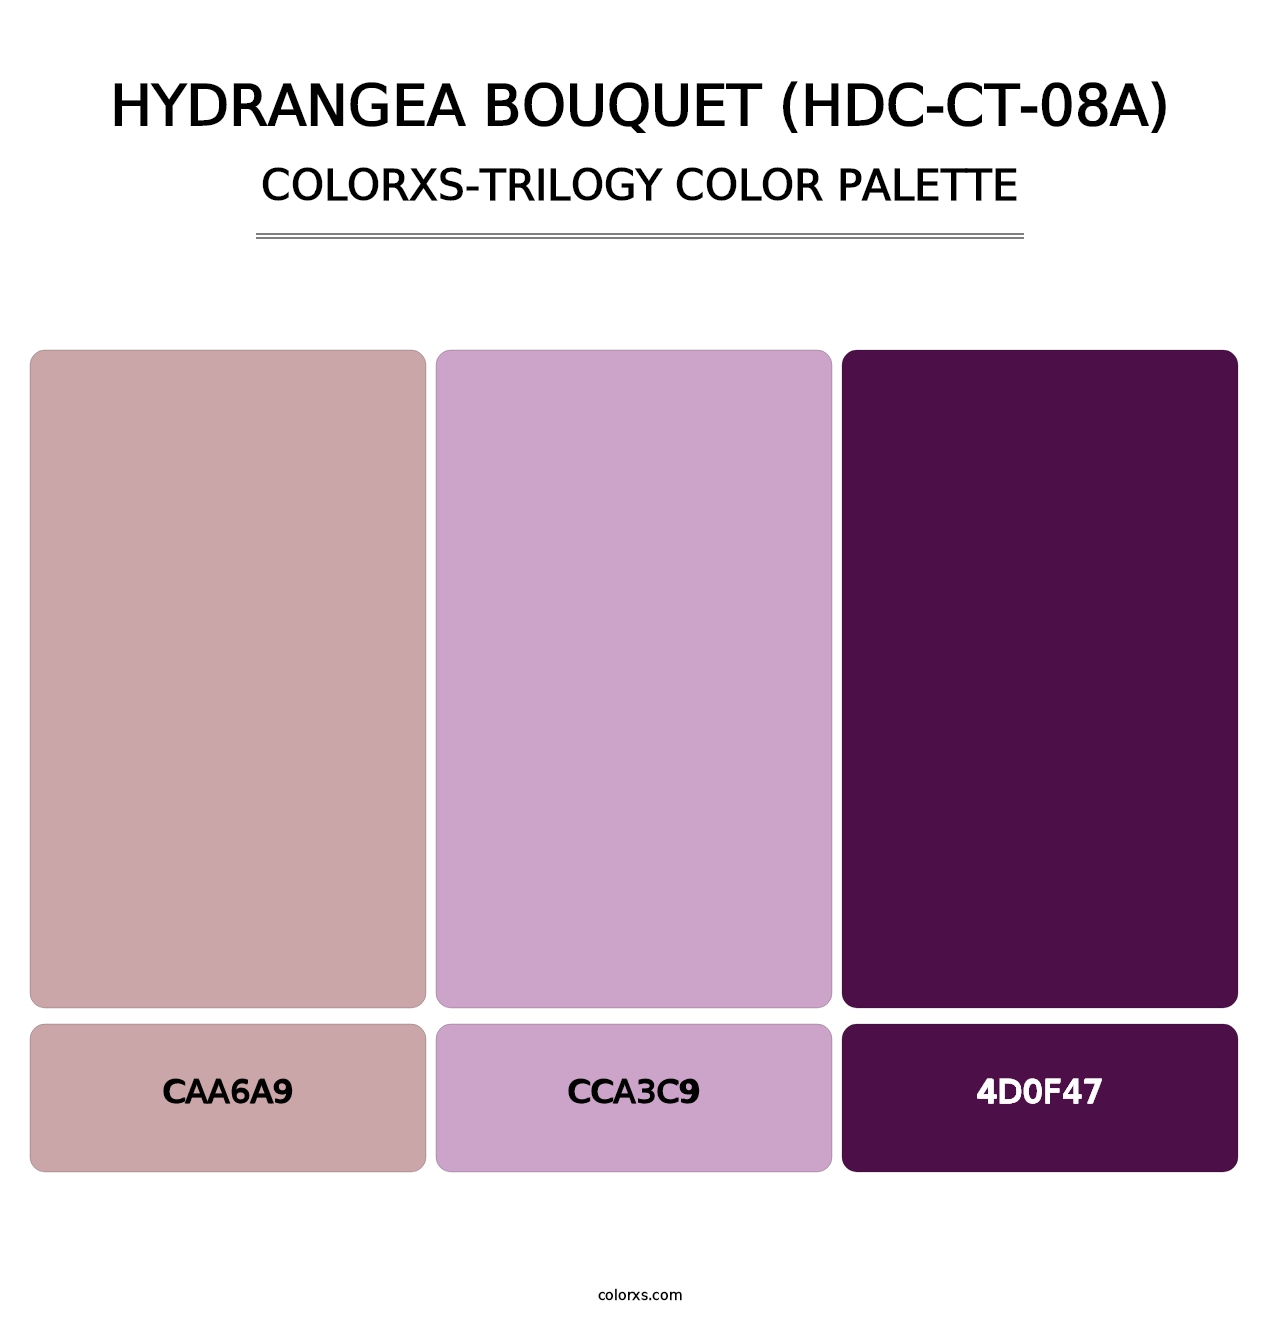 Hydrangea Bouquet (HDC-CT-08A) - Colorxs Trilogy Palette